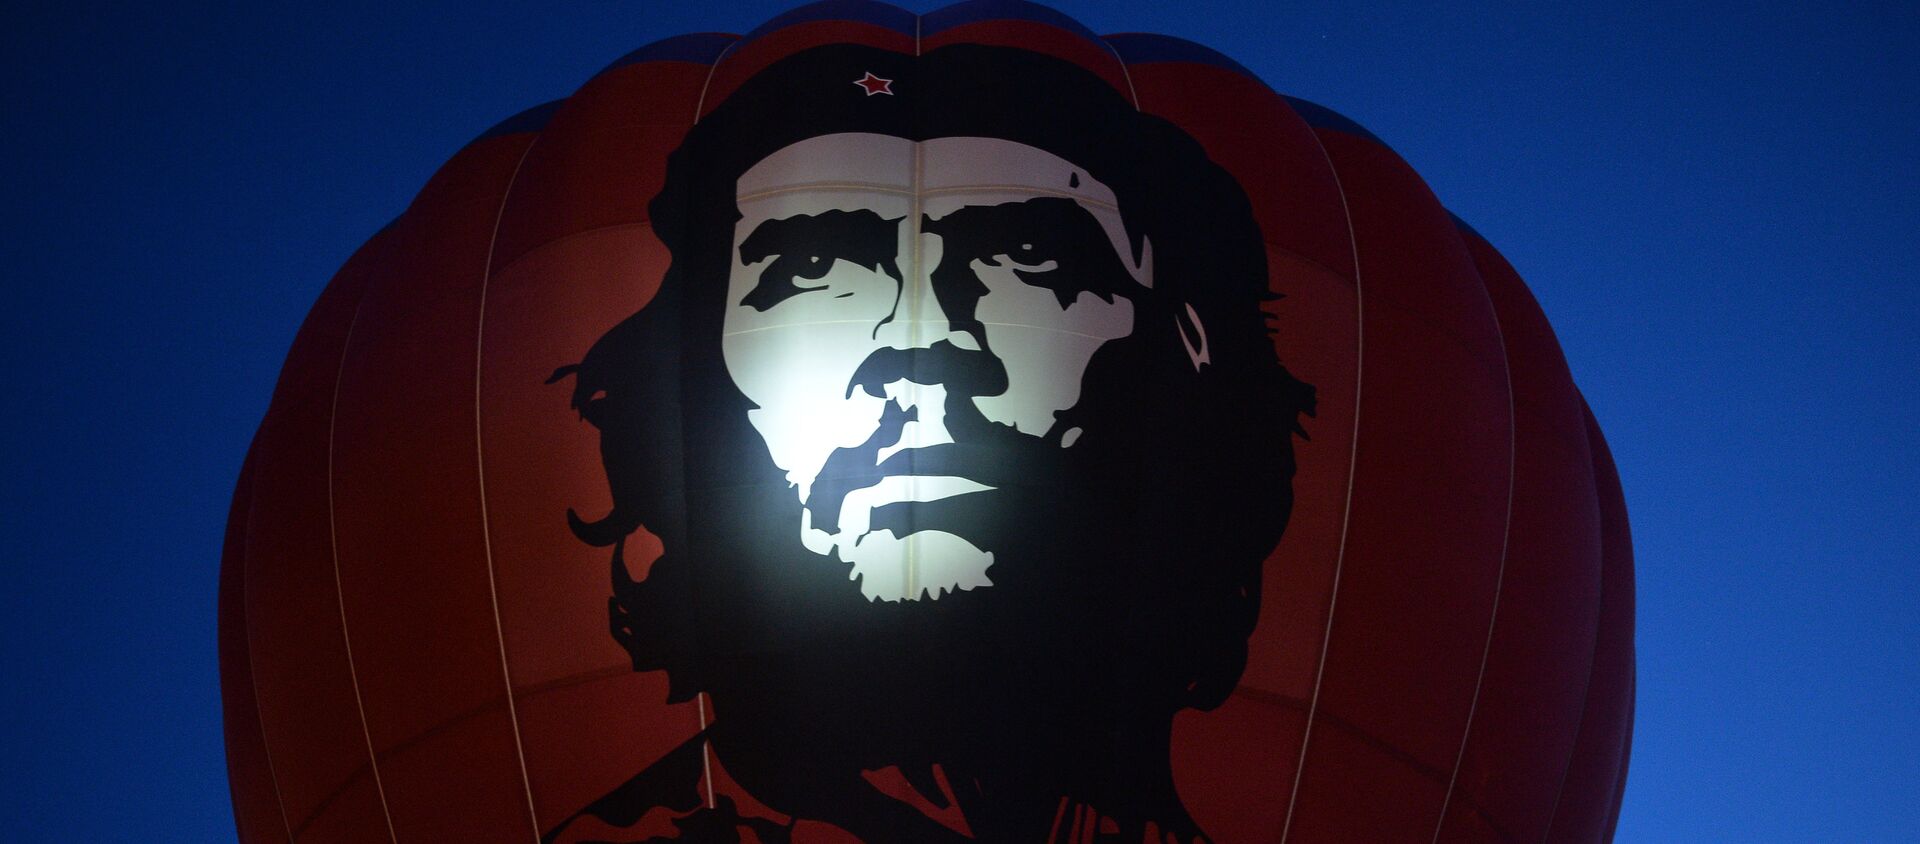 Retrato de Che Guevara - Sputnik Mundo, 1920, 18.04.2018